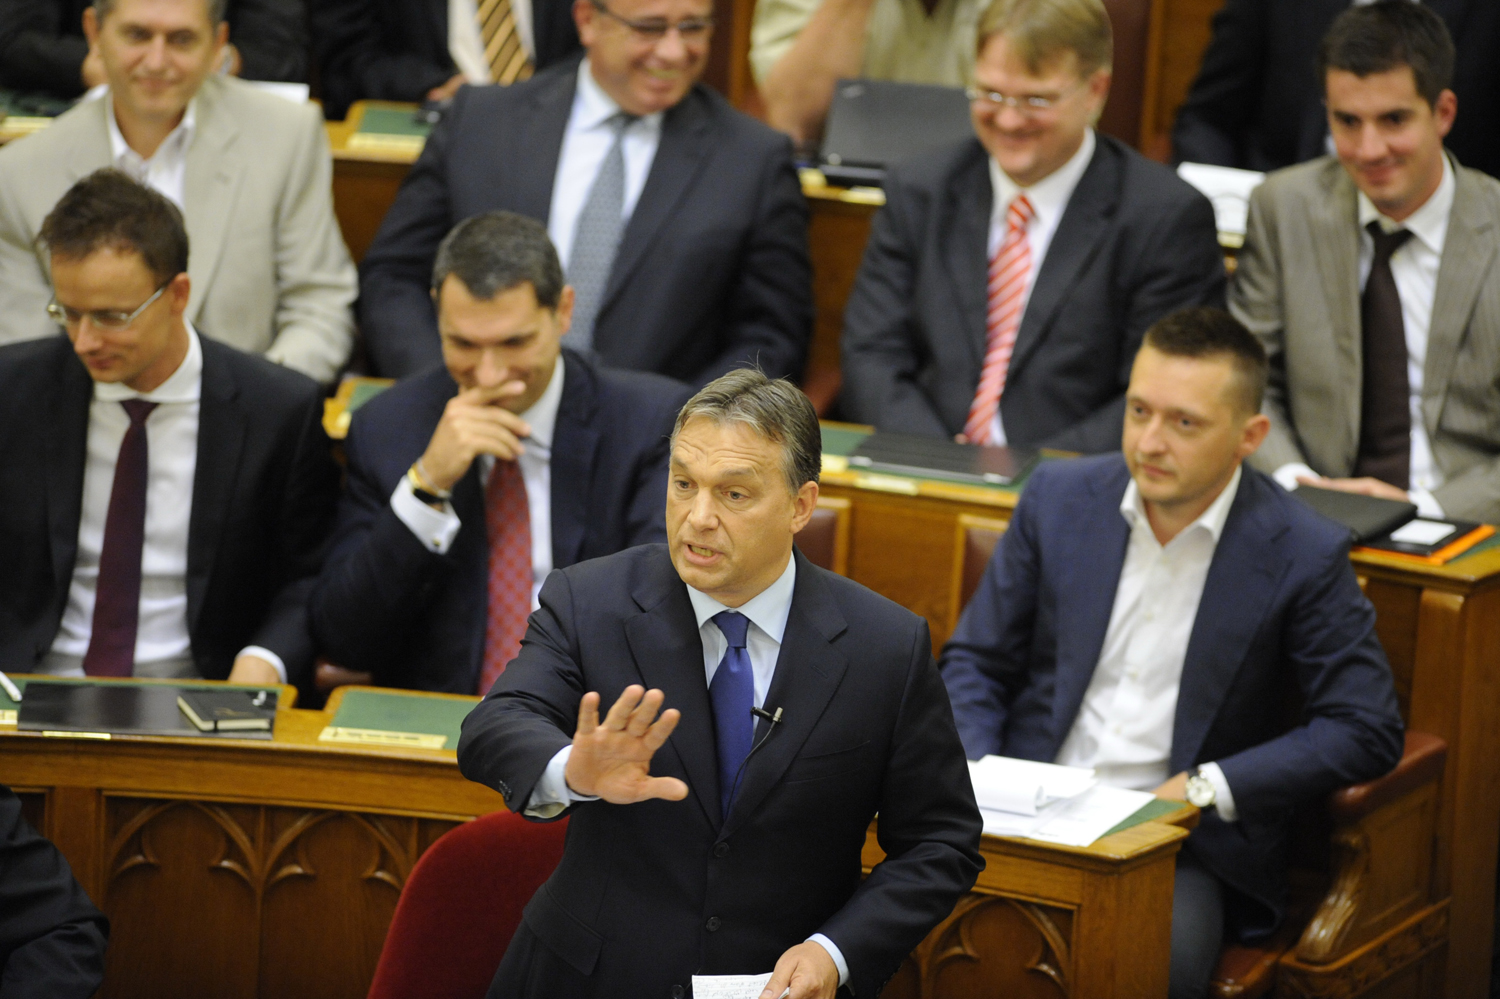 Eddig, és ne tovább! Orbán Viktor a parlamentben